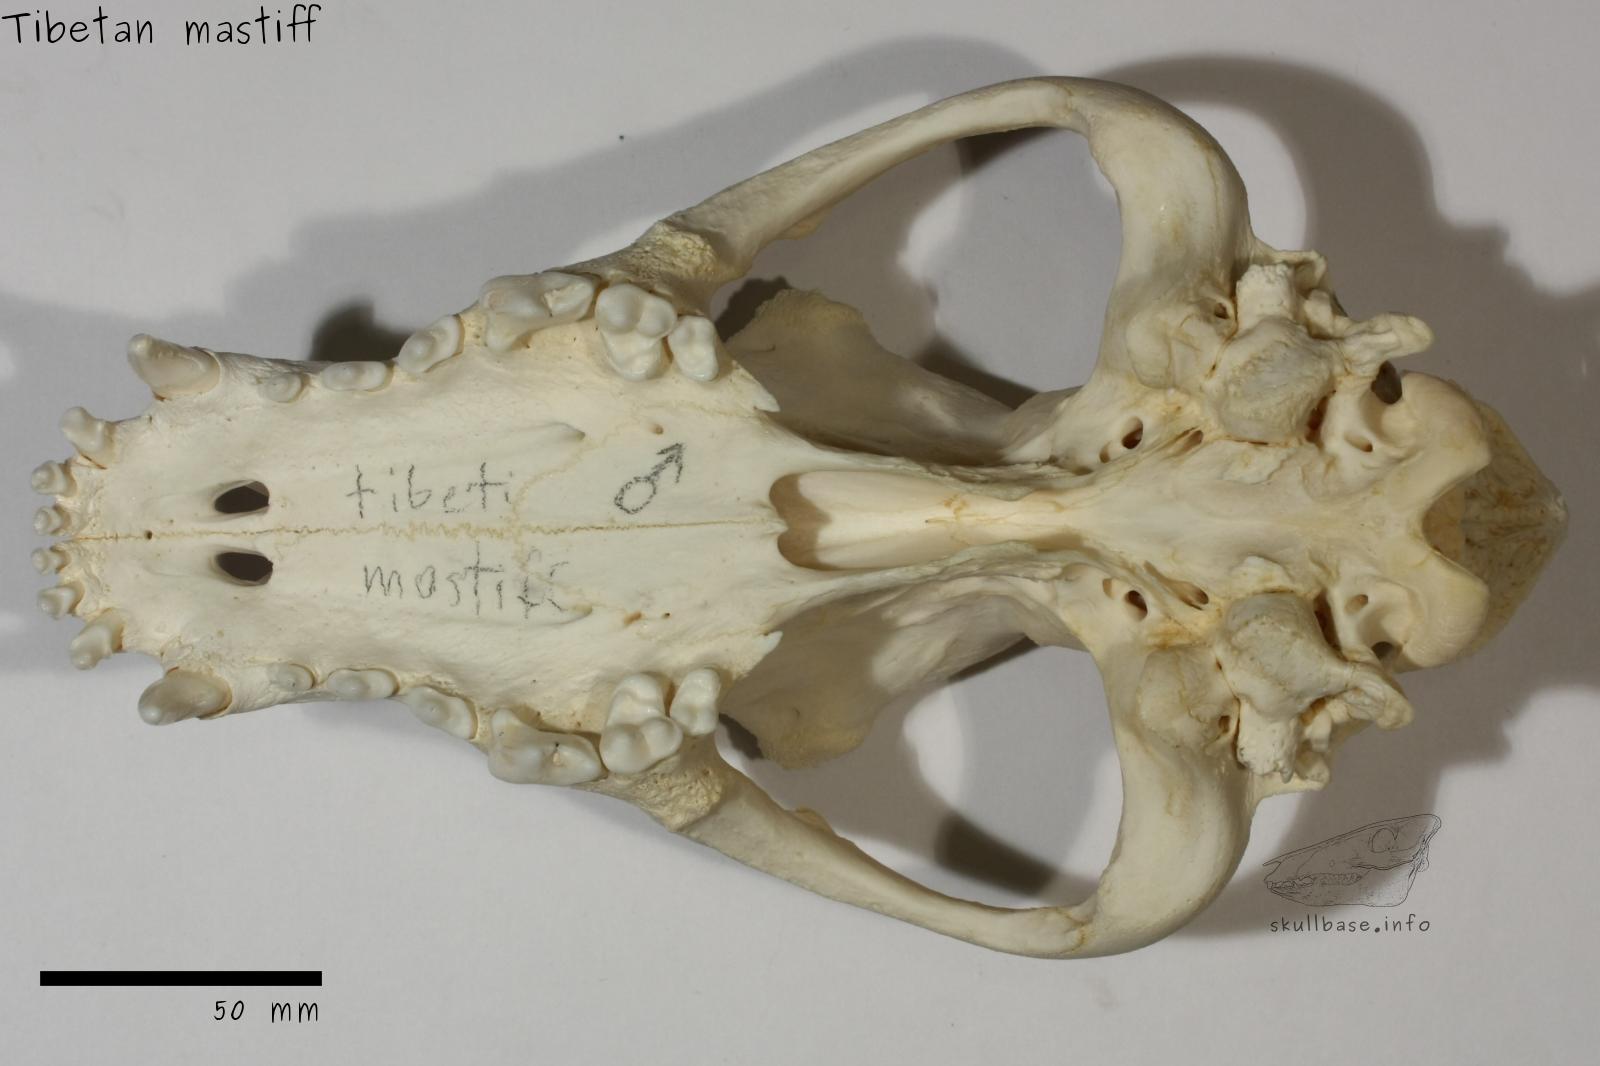 Tibetan mastiff (Canis lupus familiaris) skull ventral view